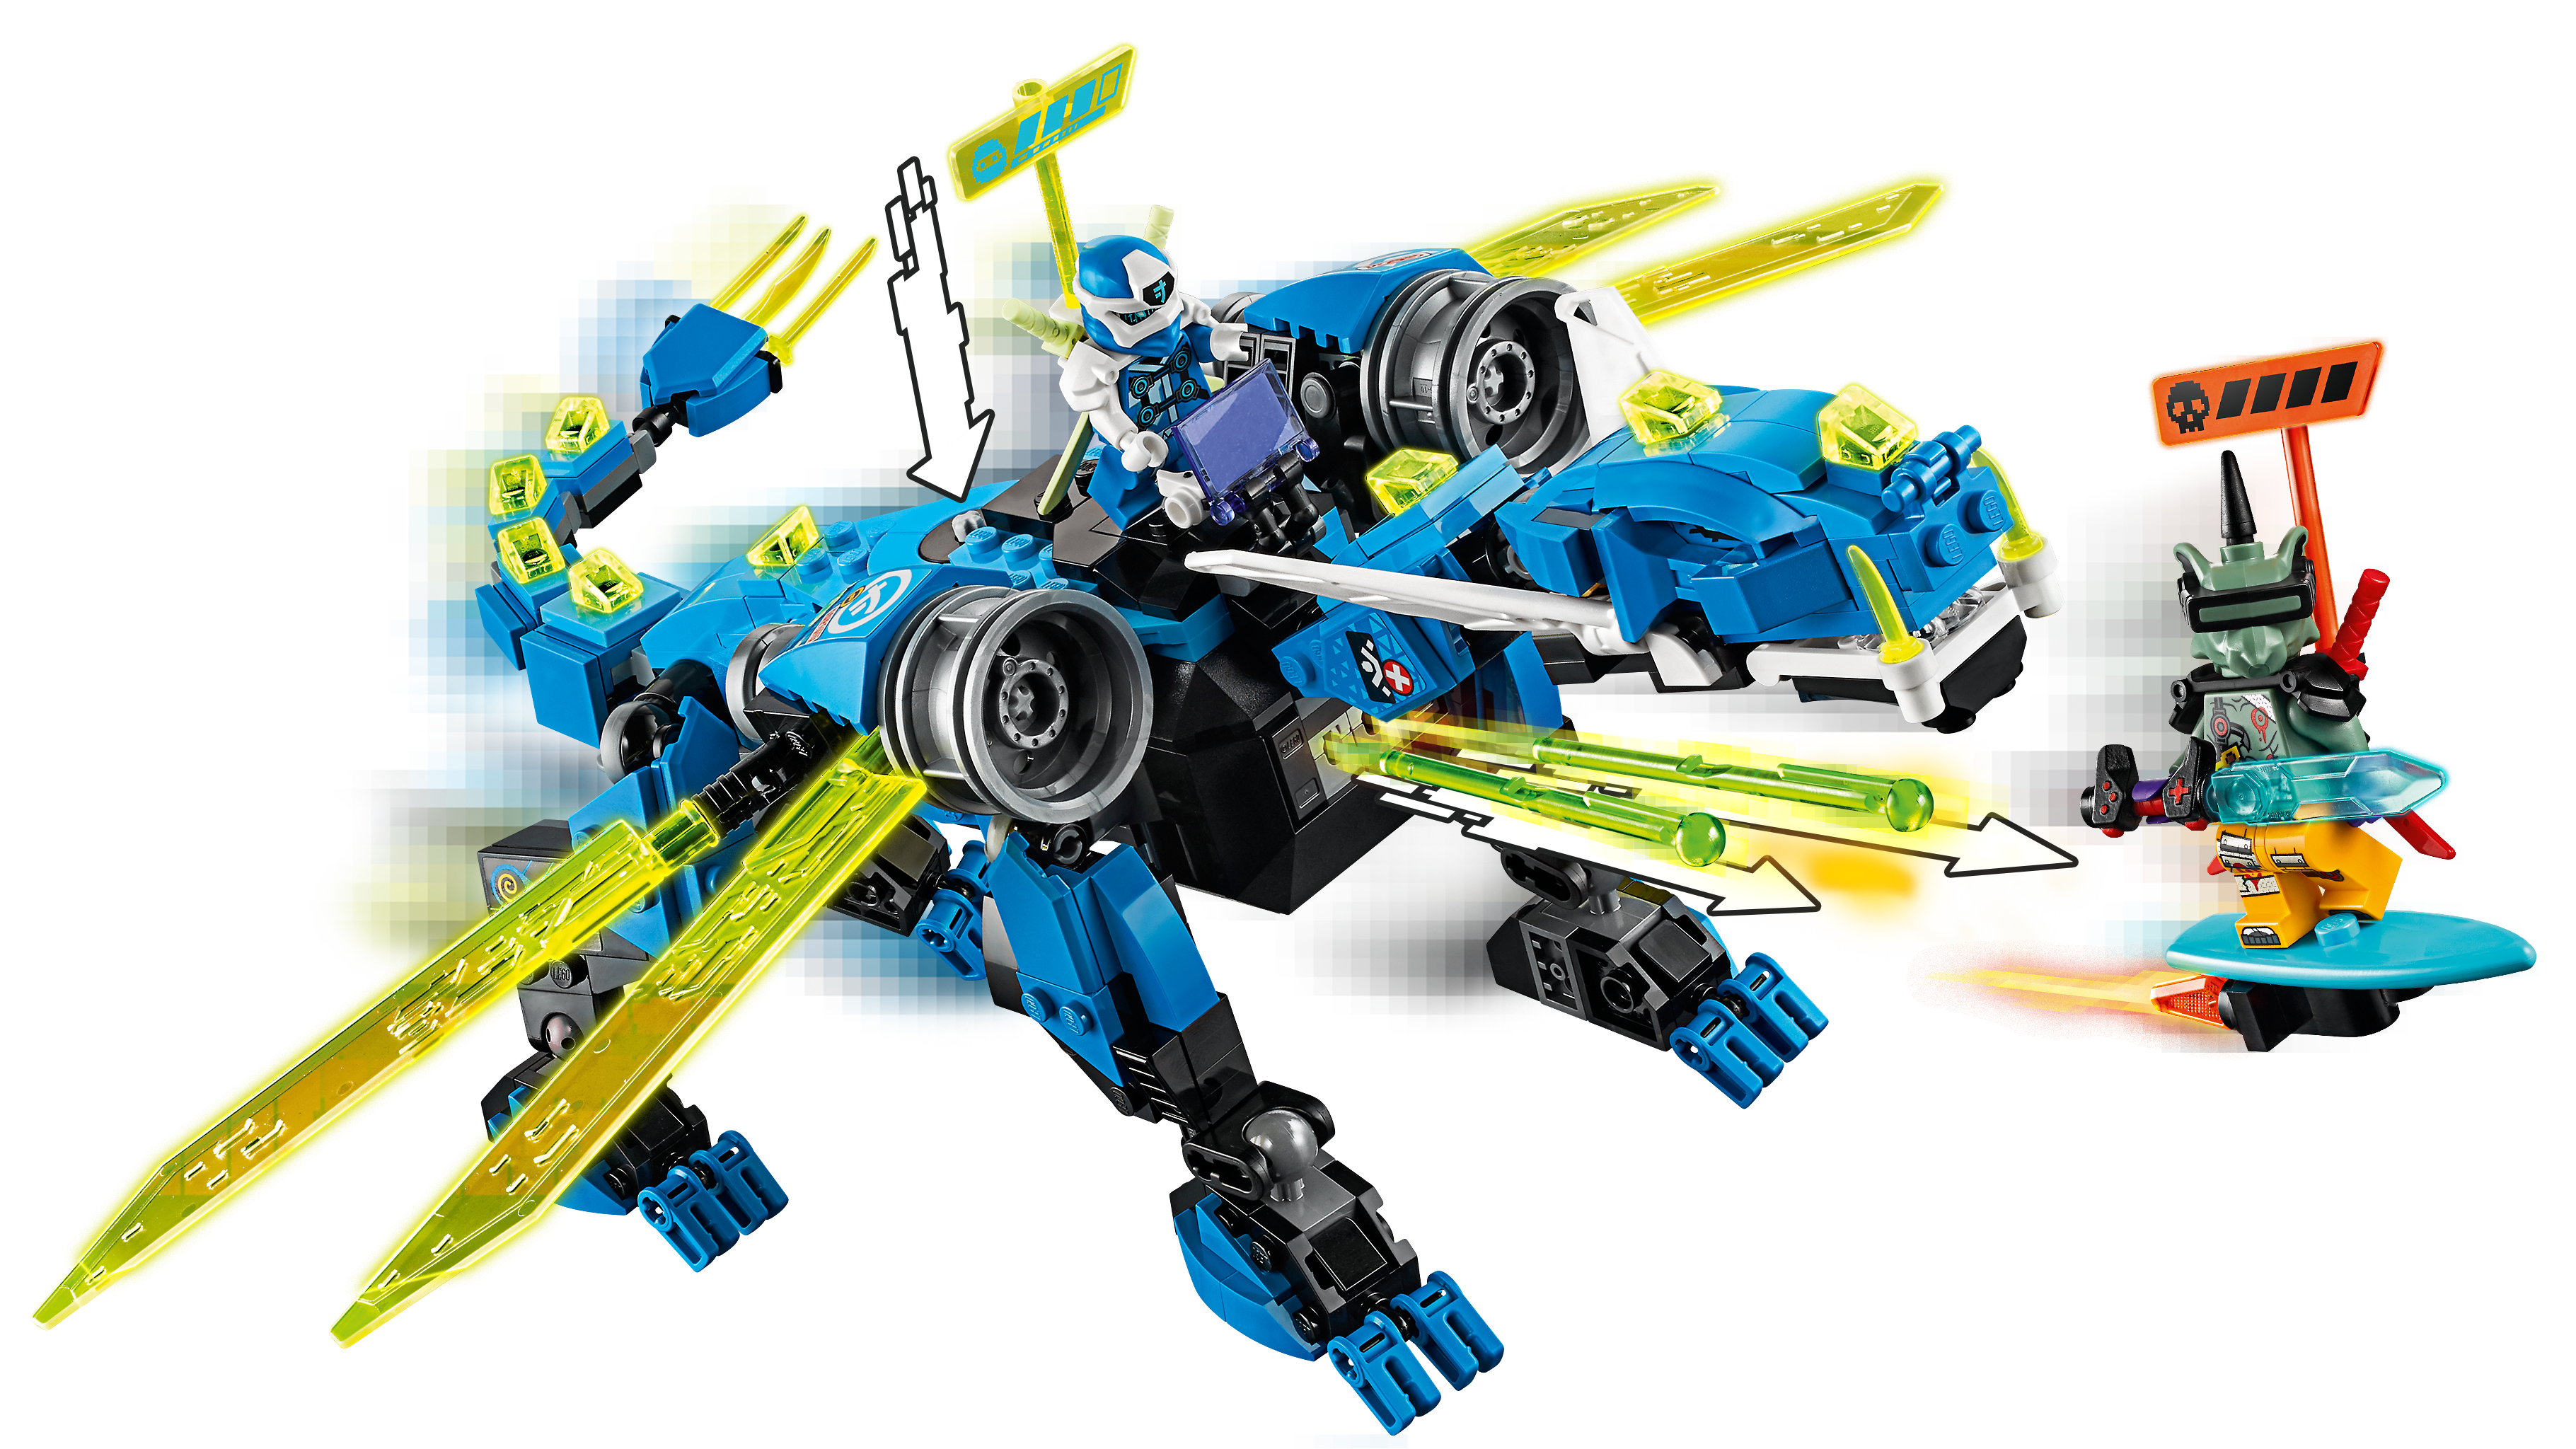 LEGO®  71711 Jays Cyber-Drache 